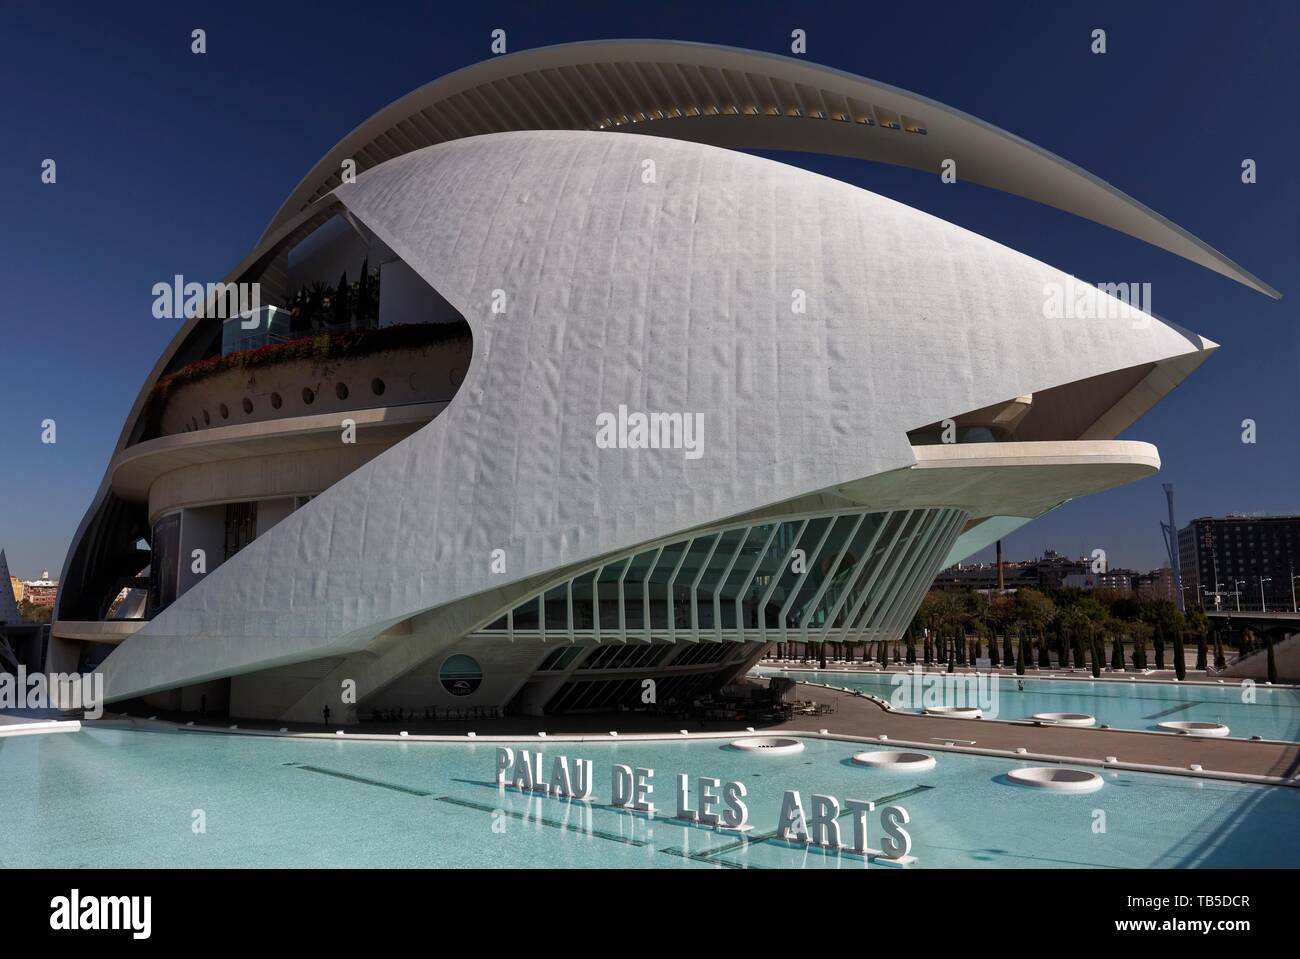 Opera, Palau de Les Arts Reine Sofia, CAC, Ciudad de Las Artes y de Las Ciencias, Architect Santiago Calatrava, Valencia, Spain Stock Photo